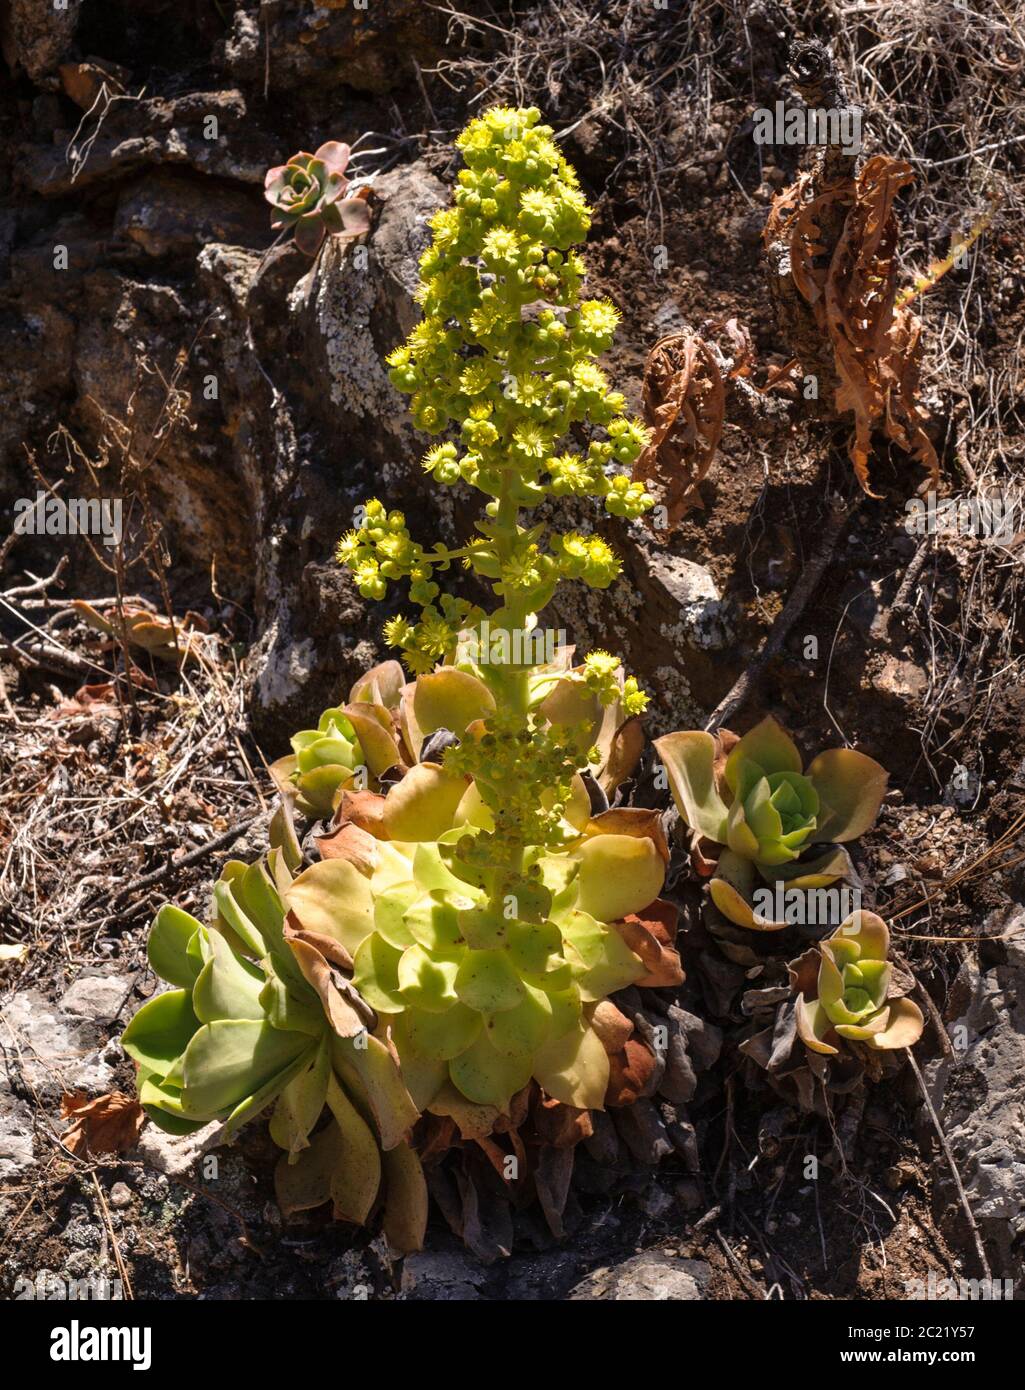 Aeonium canariense ssp. christii Stock Photo